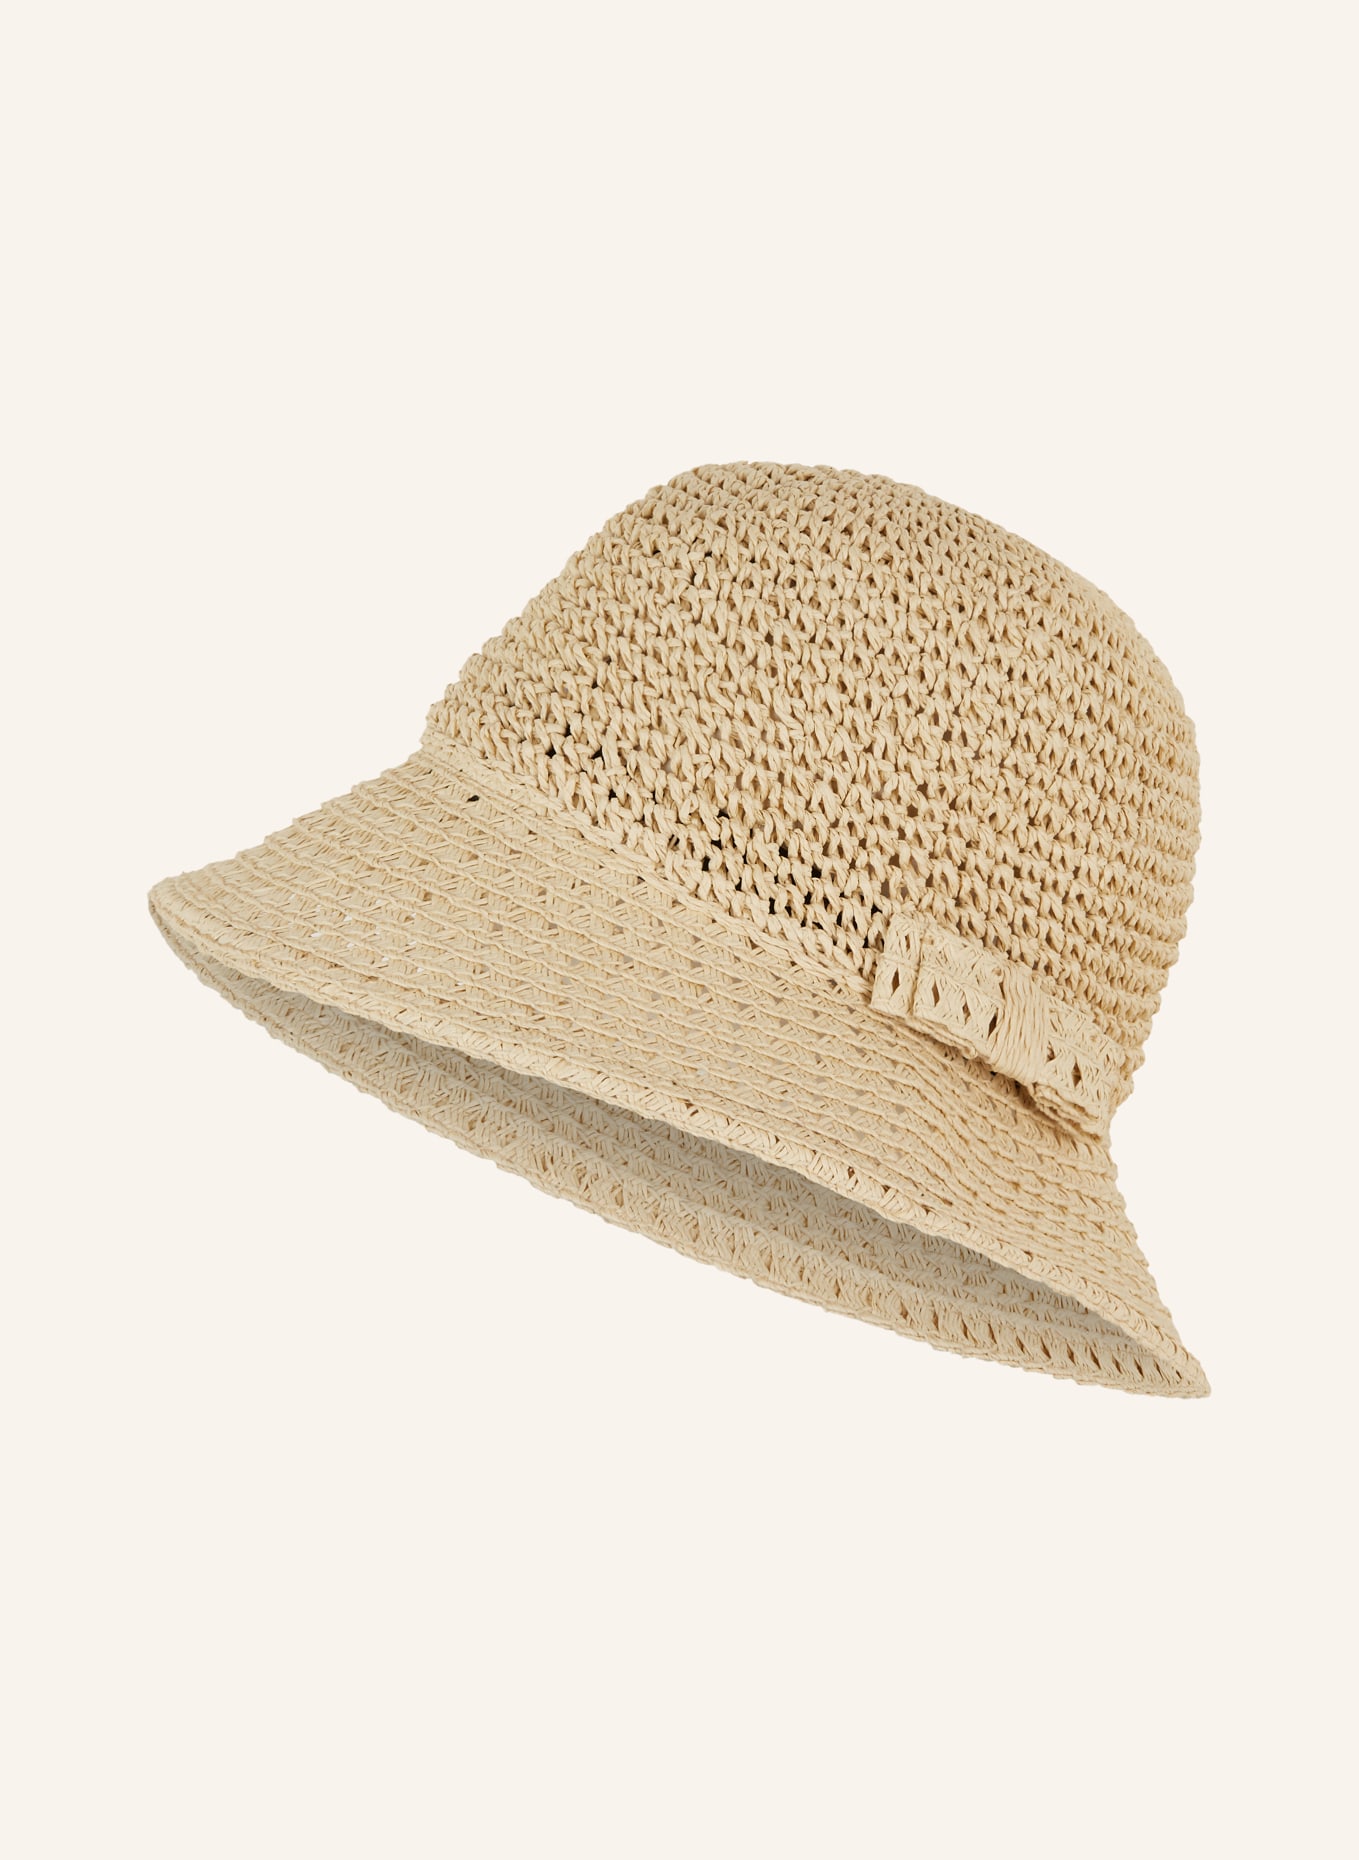 SEEBERGER Straw hat, Color: ECRU (Image 1)